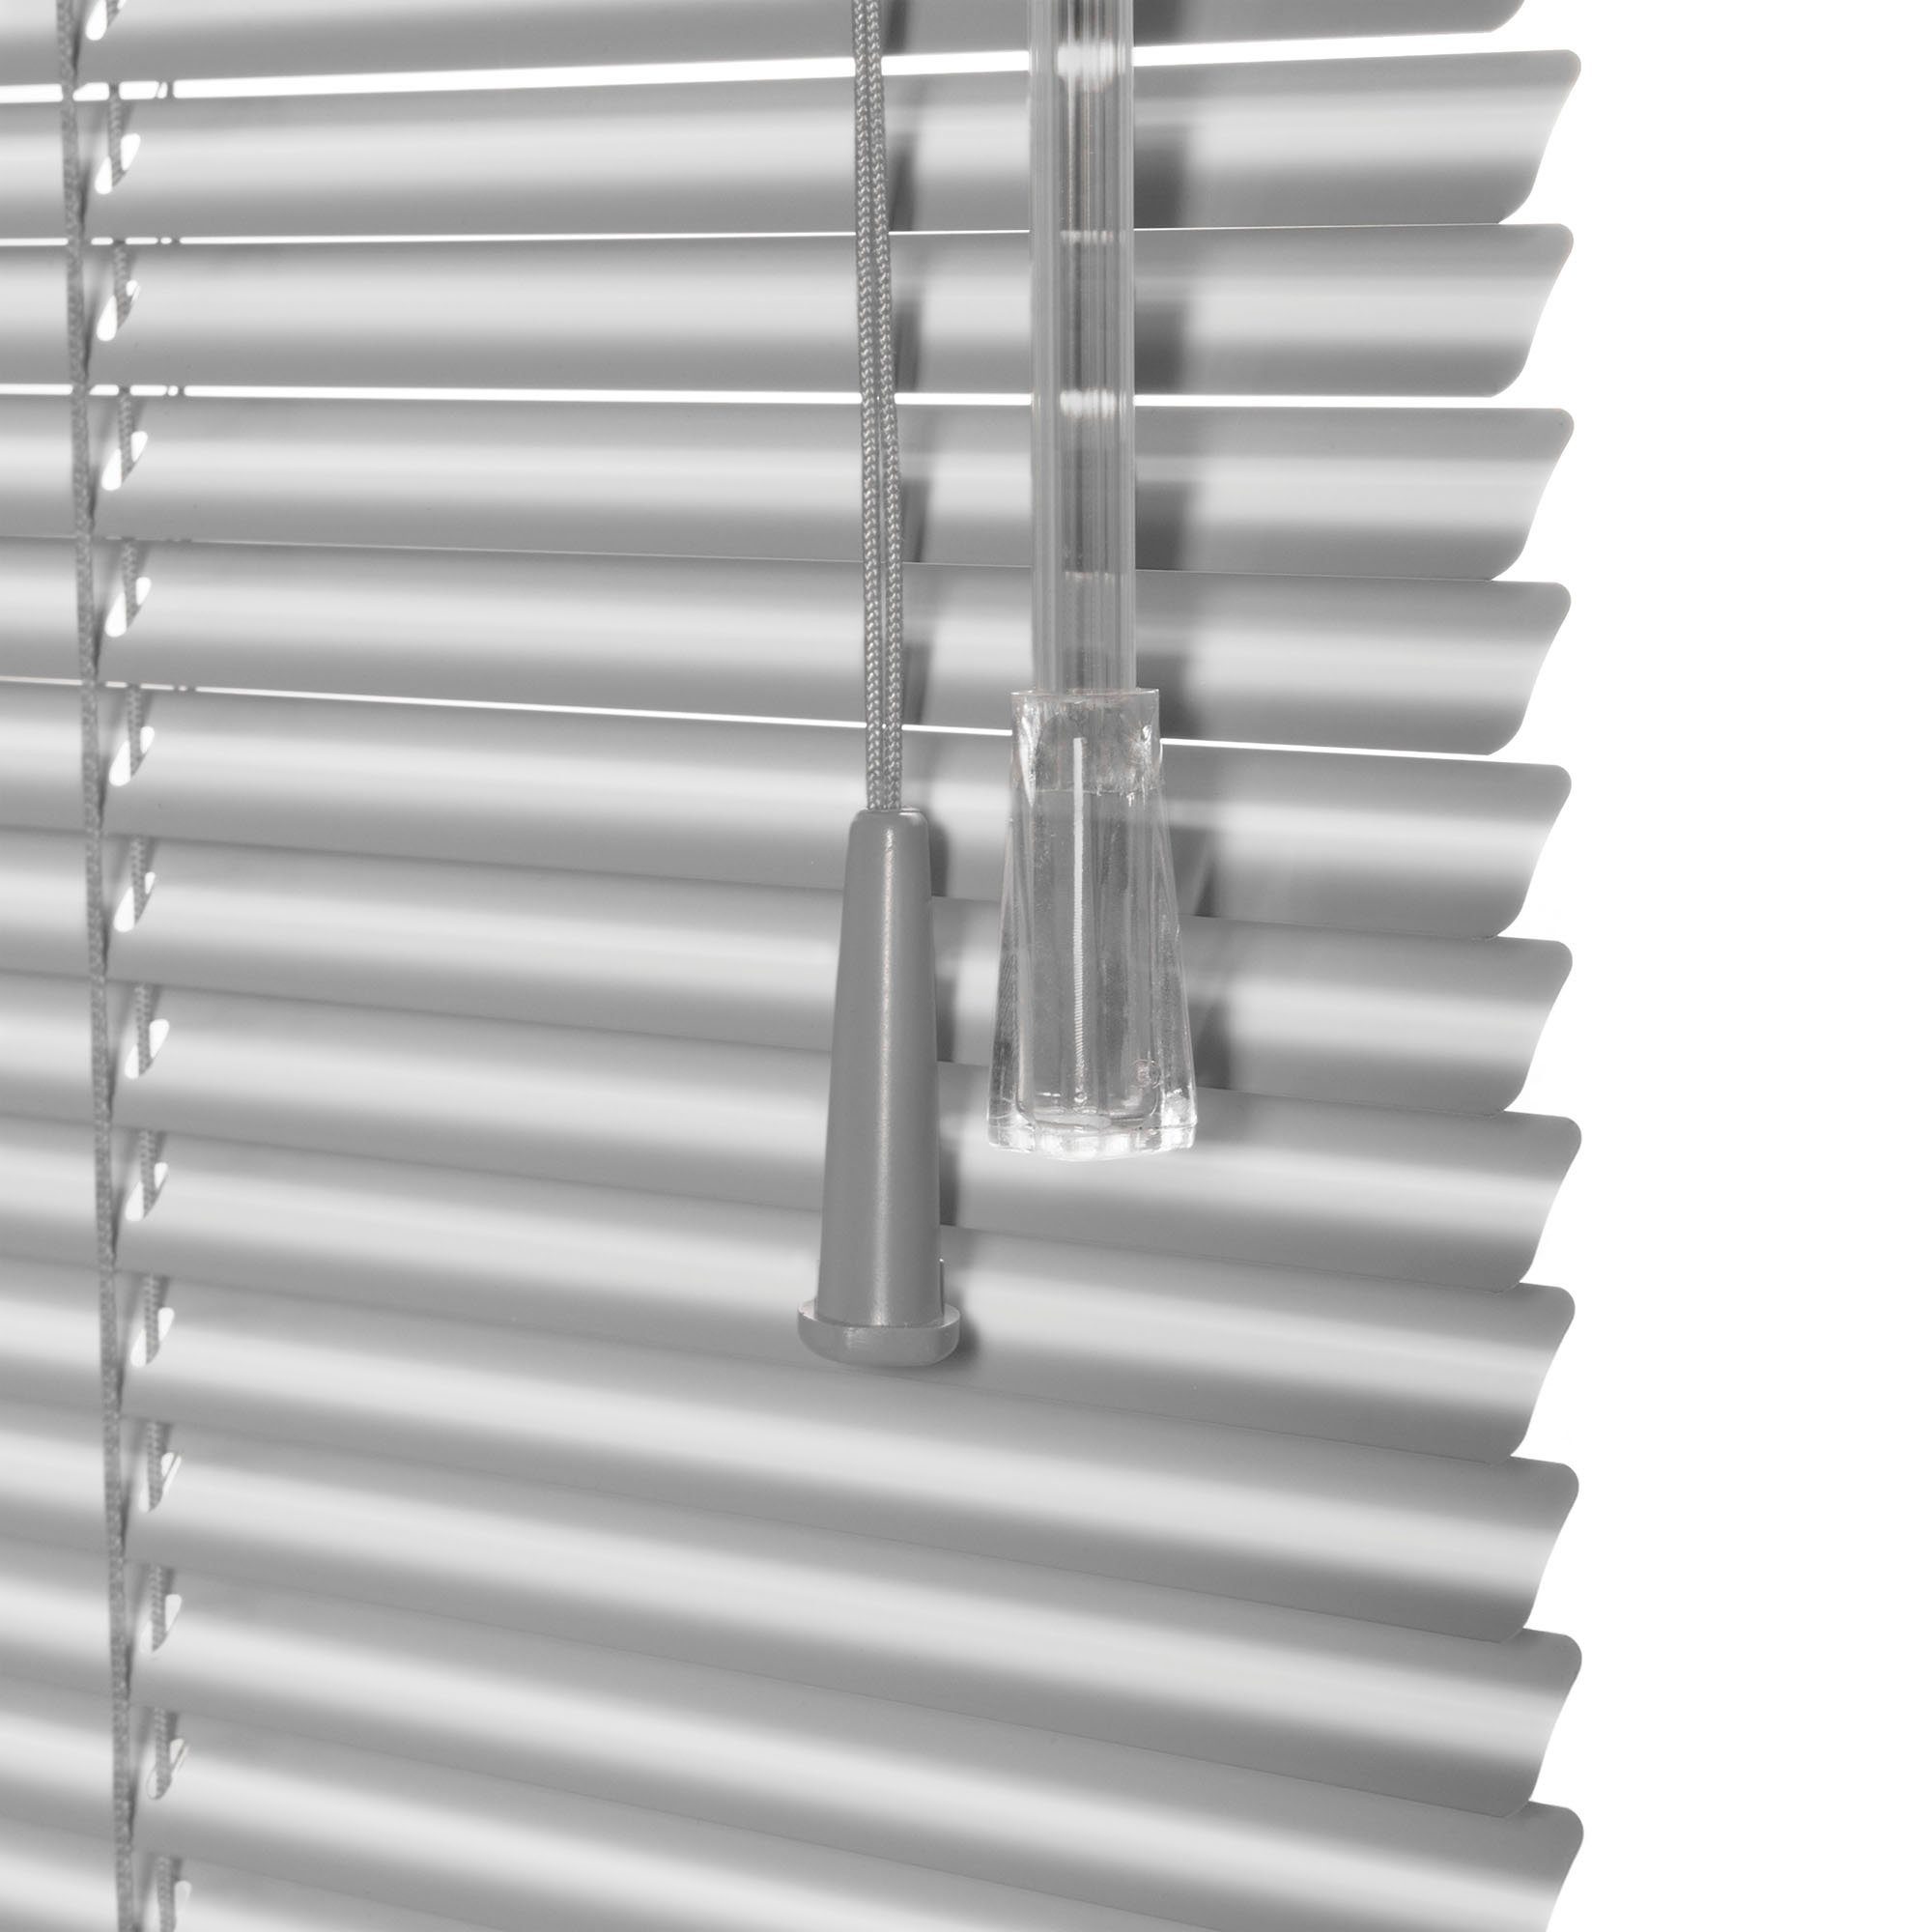 Made aluminiumfarben viewtex, Jalousie aluminiumfarben freihängend, Alu-Jalousien, | Spain, Bohren, mit in Einbrennlackierung